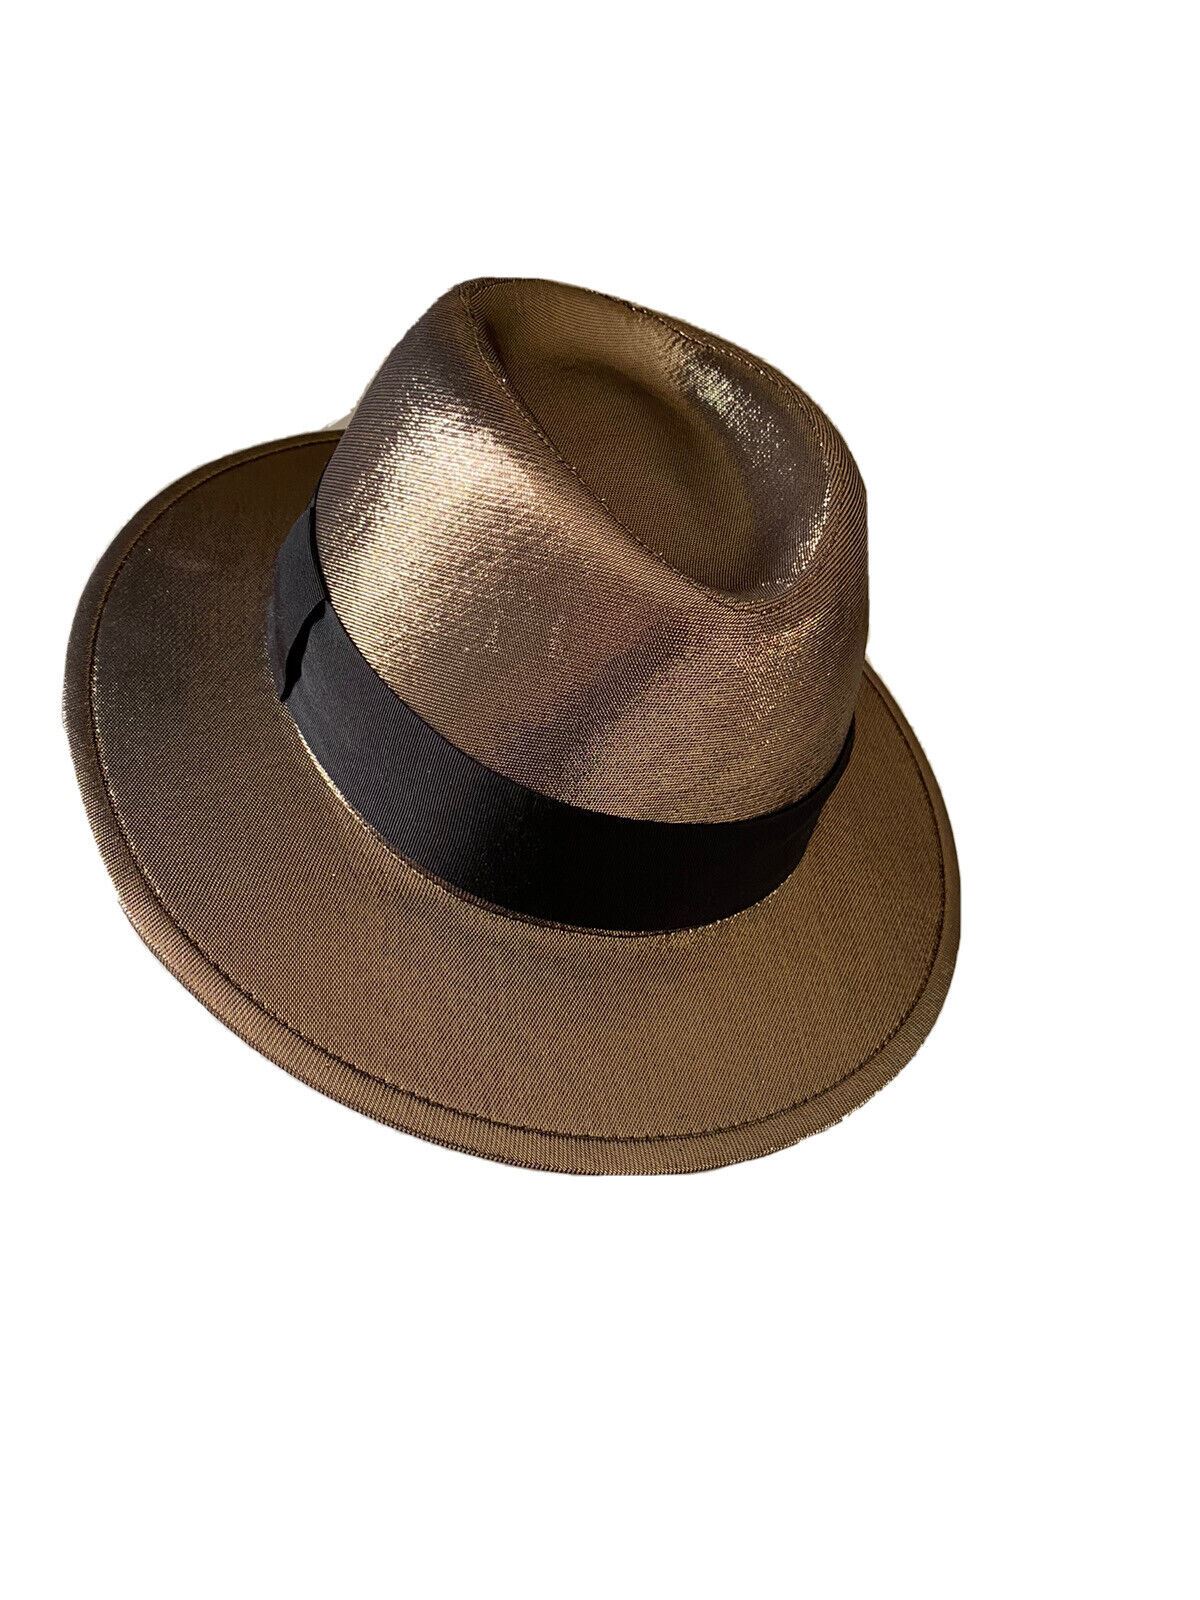 NWT $895 Saint Laurent Мужская фетровая шляпа Lane Fedora золотистого размера M Италия